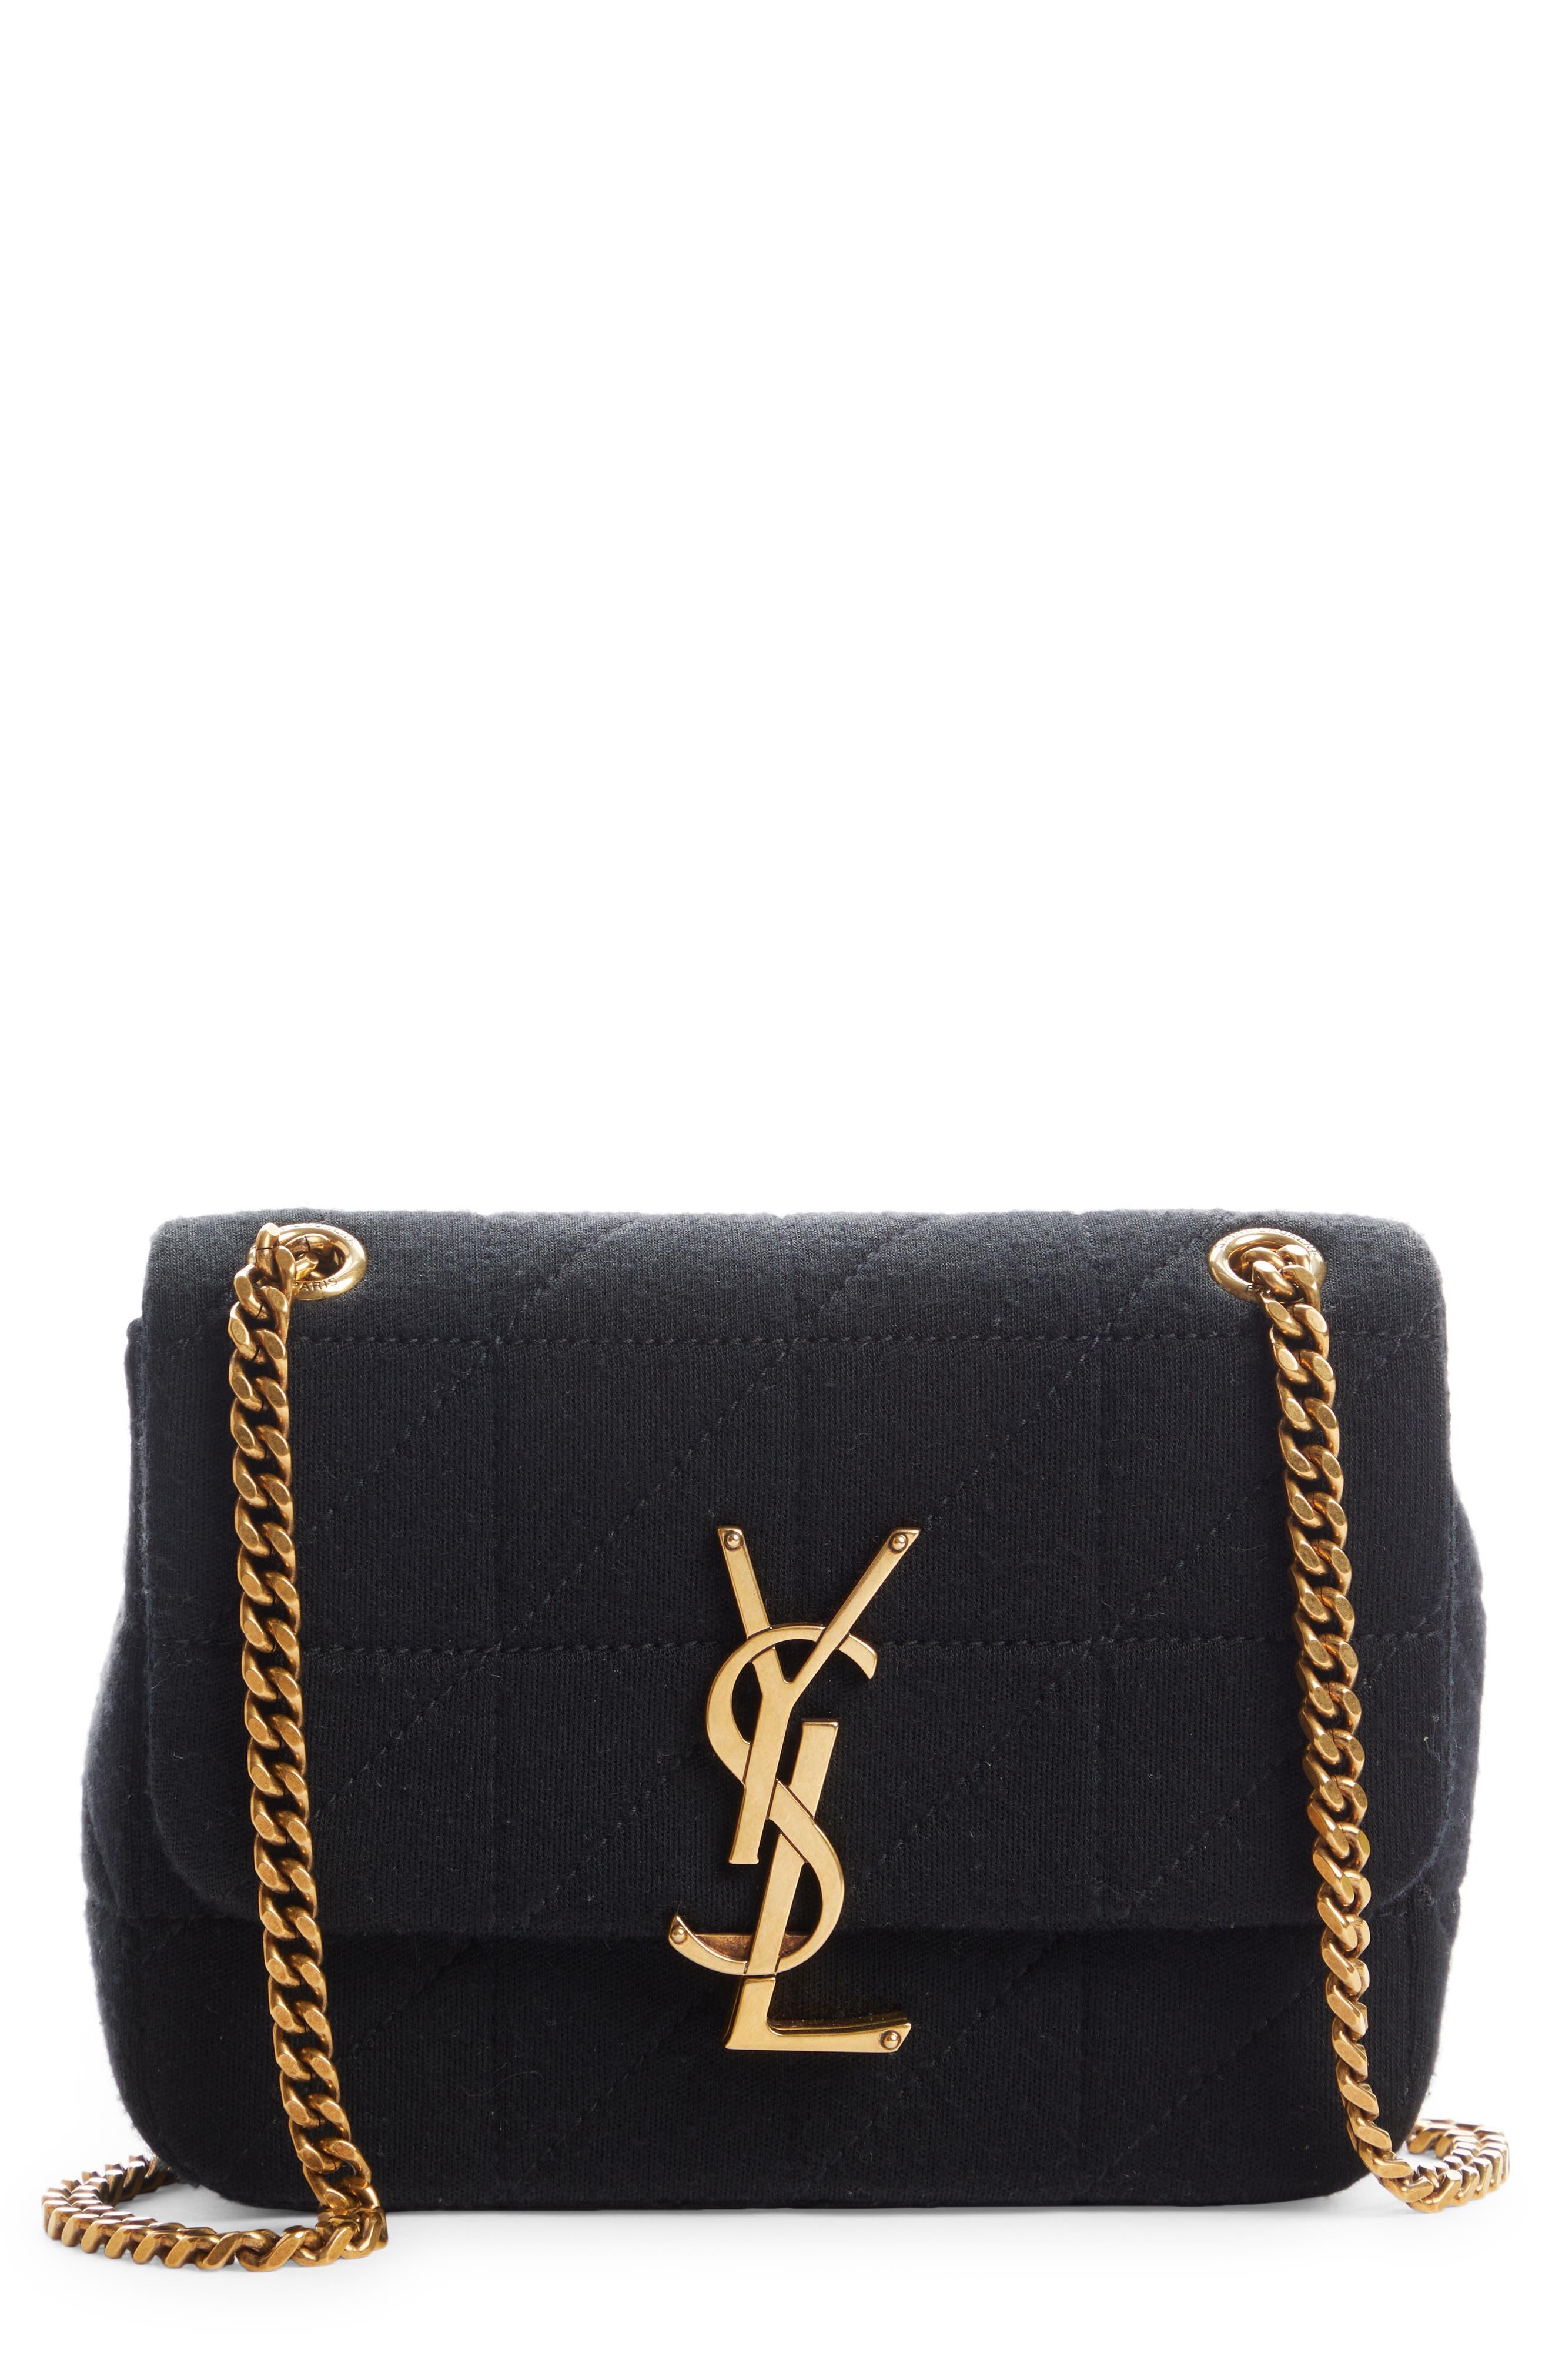 Louis Vuitton Lock Chain Bag  Black Louis Vuitton Monogram Puffer